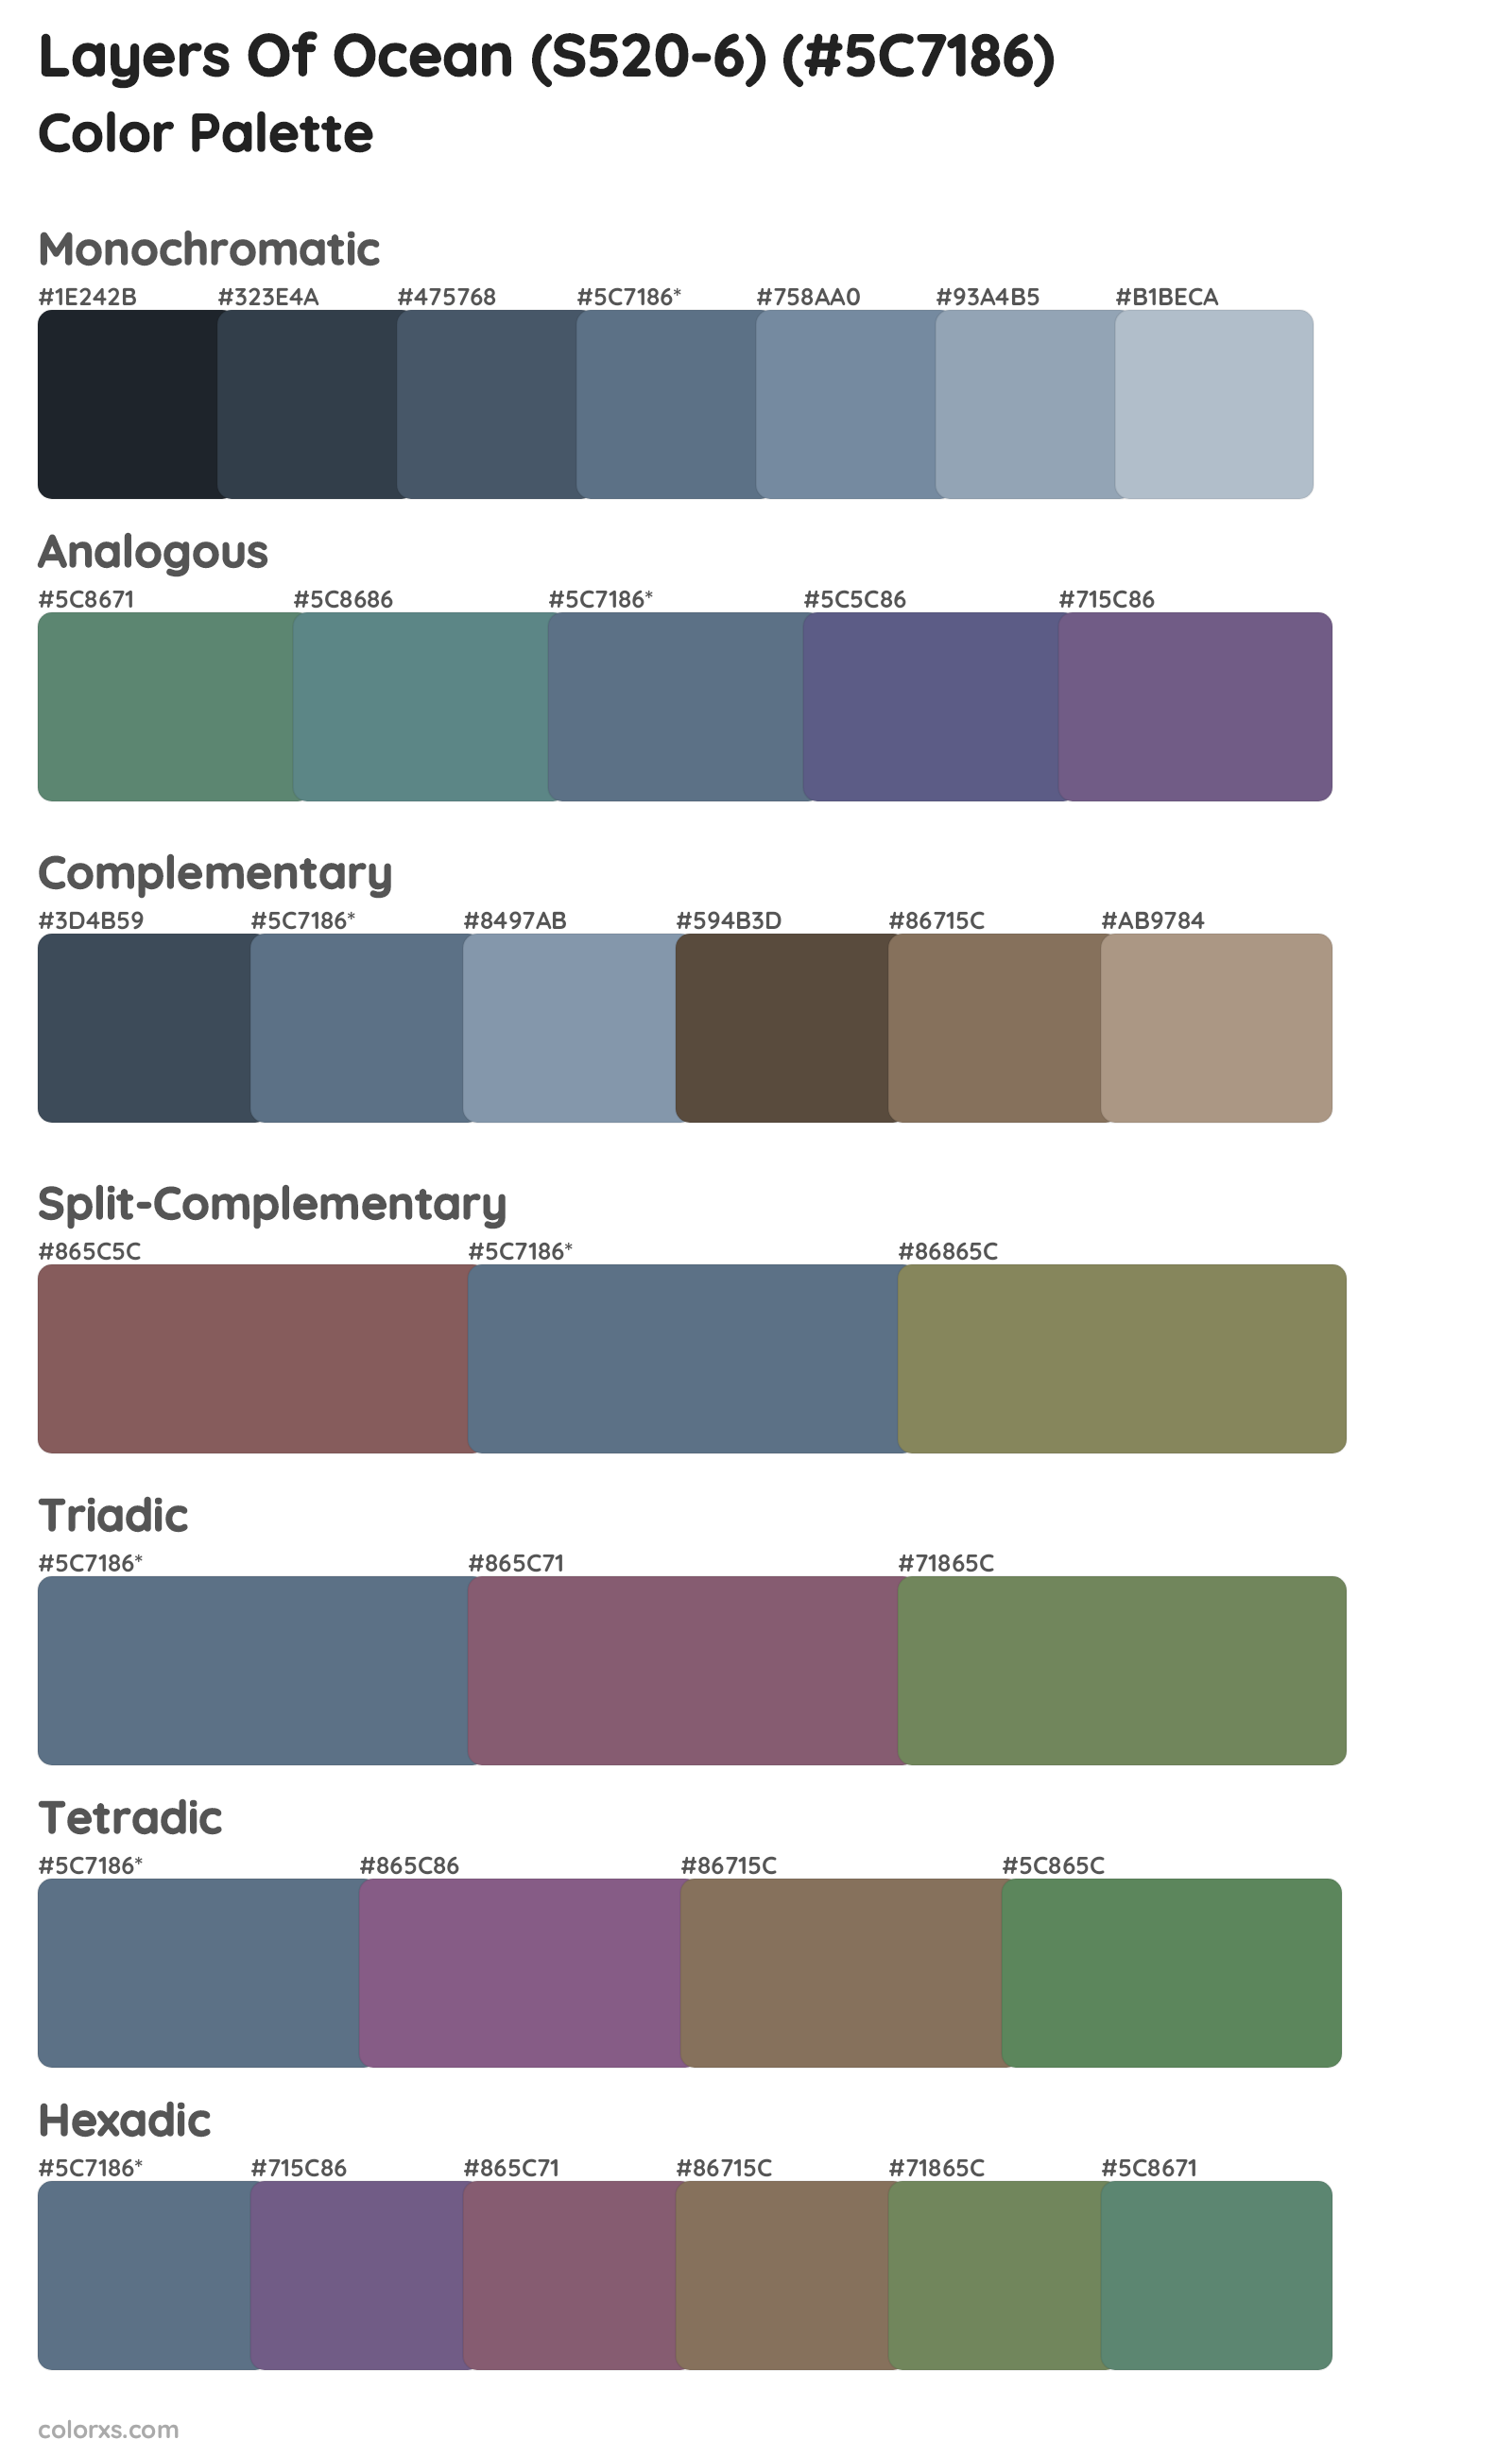 Layers Of Ocean (S520-6) Color Scheme Palettes